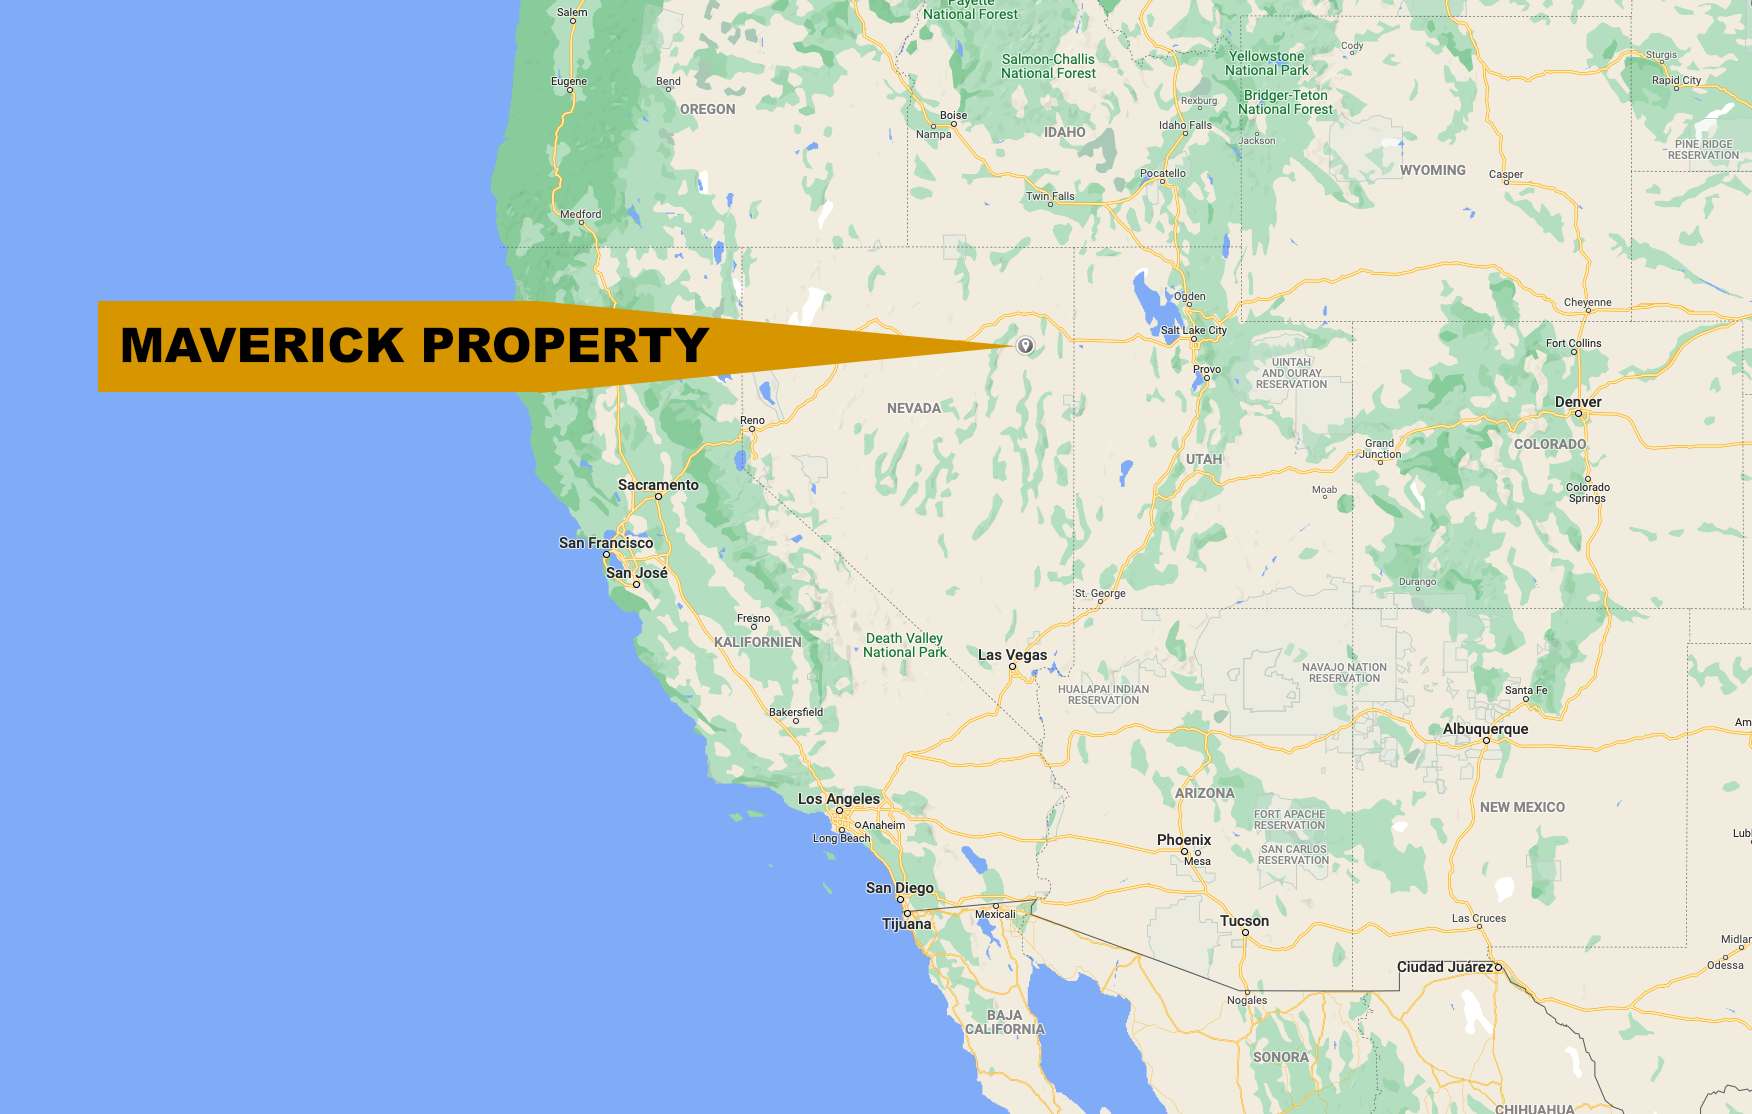 Maverick Property